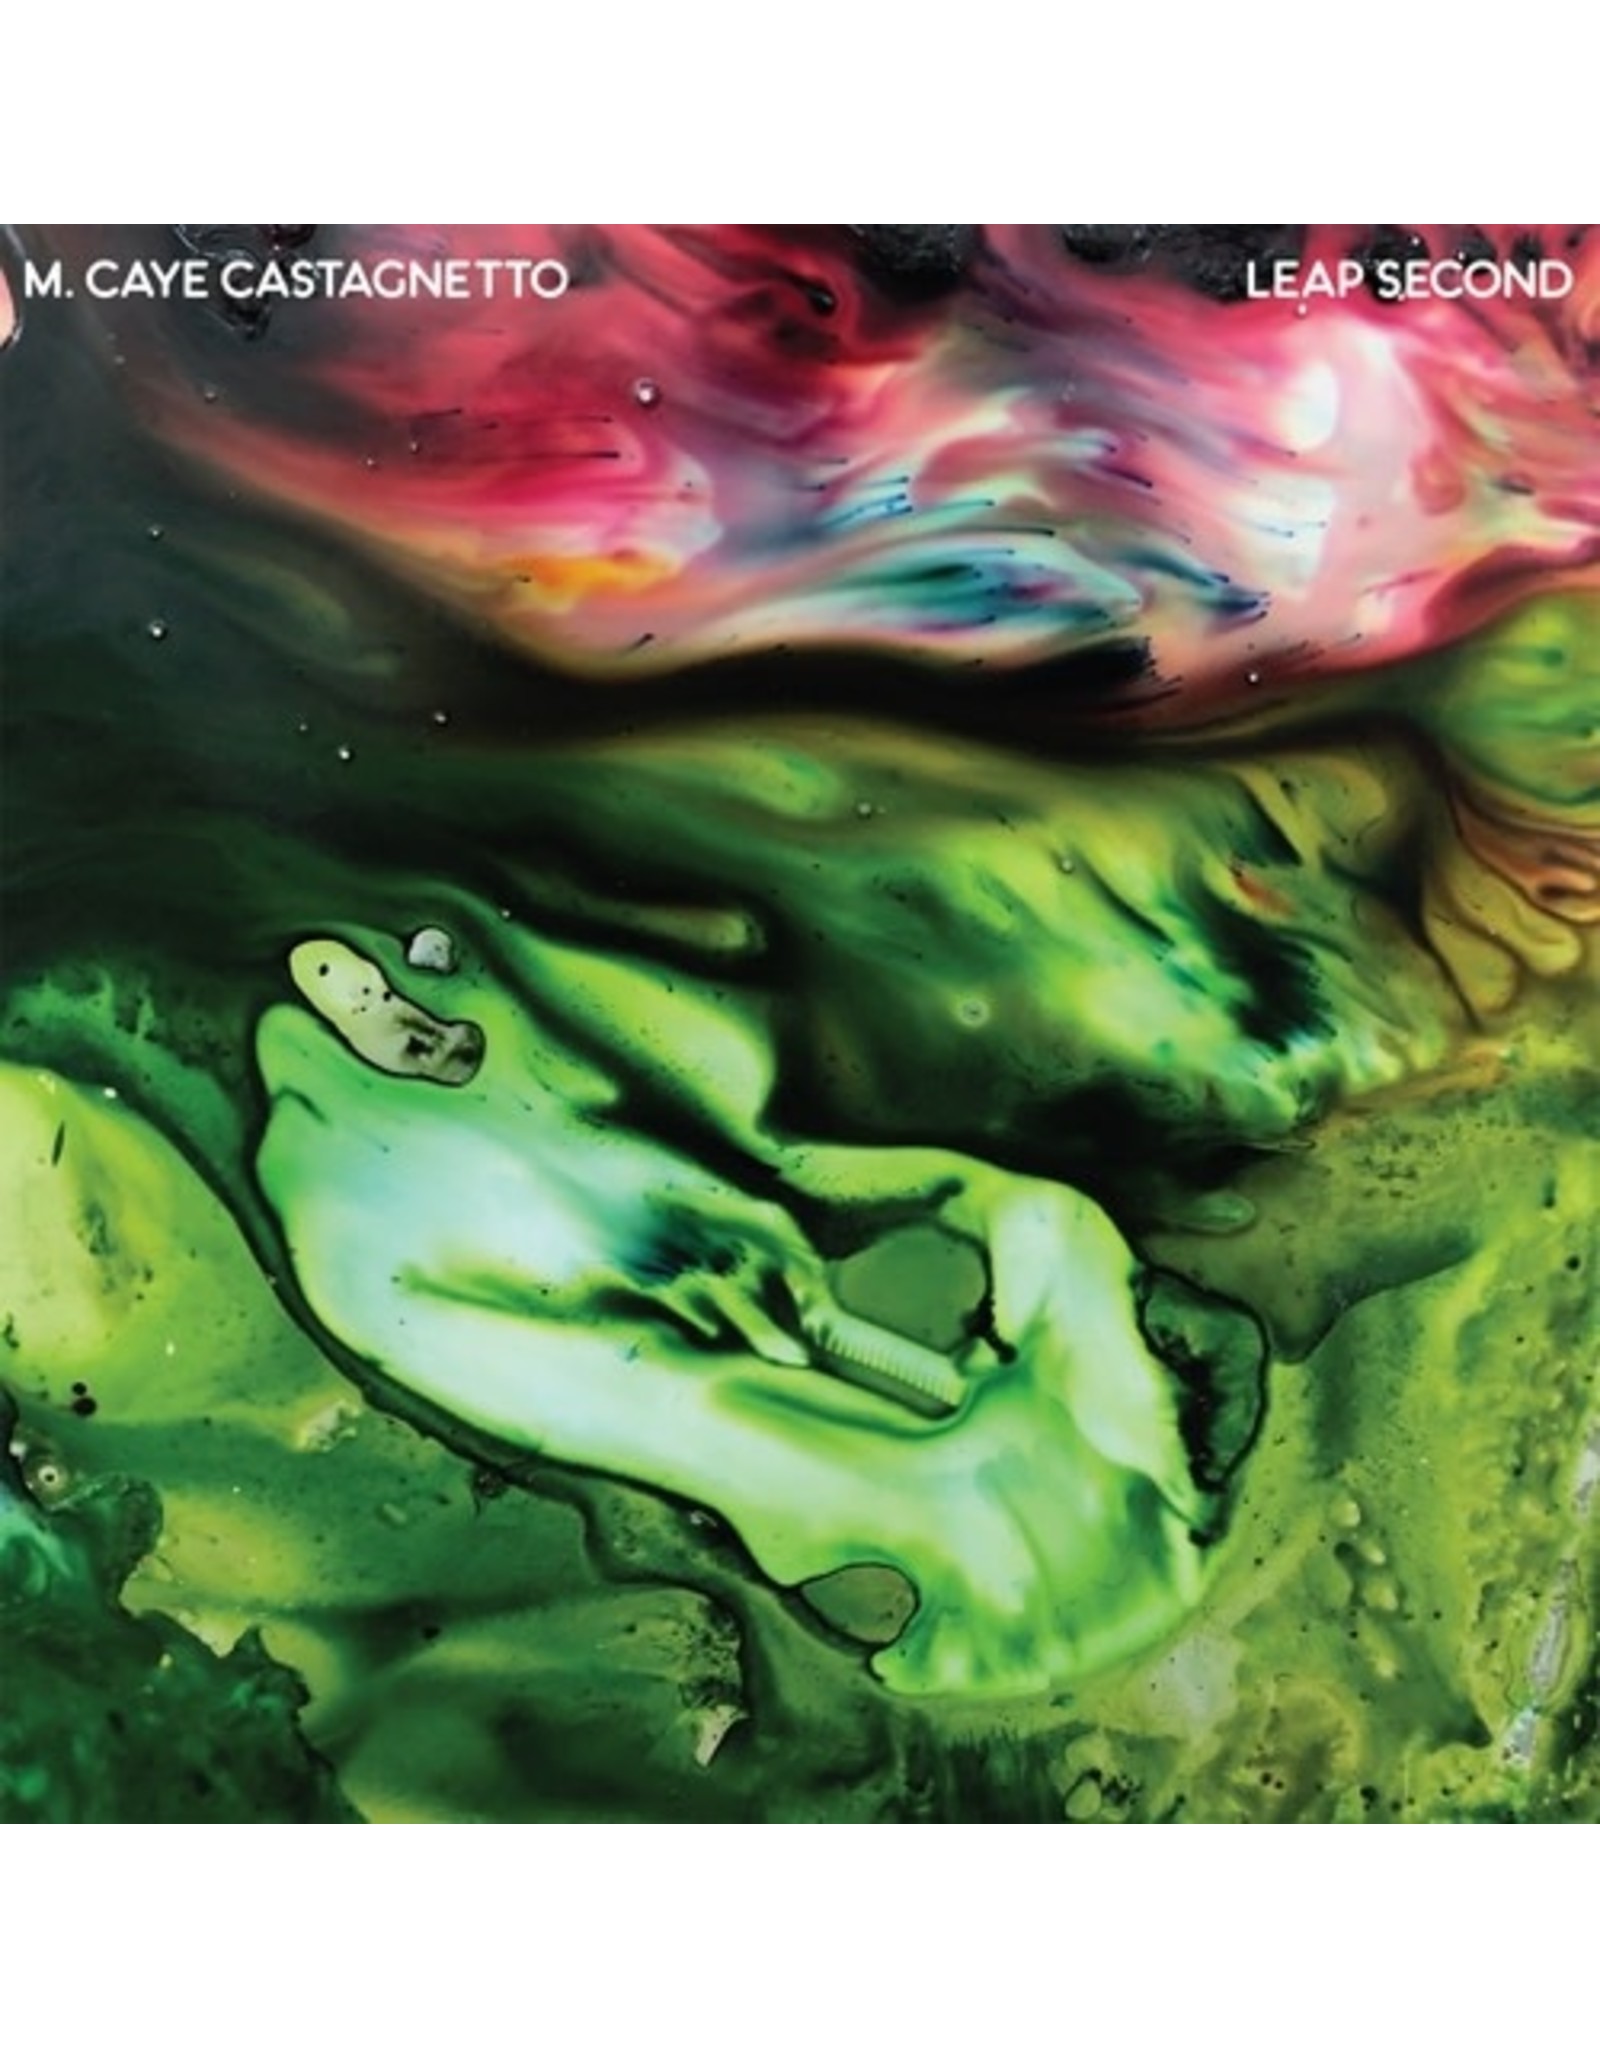 Castle Face Castagnetto, M. Caye: Leap Second LP